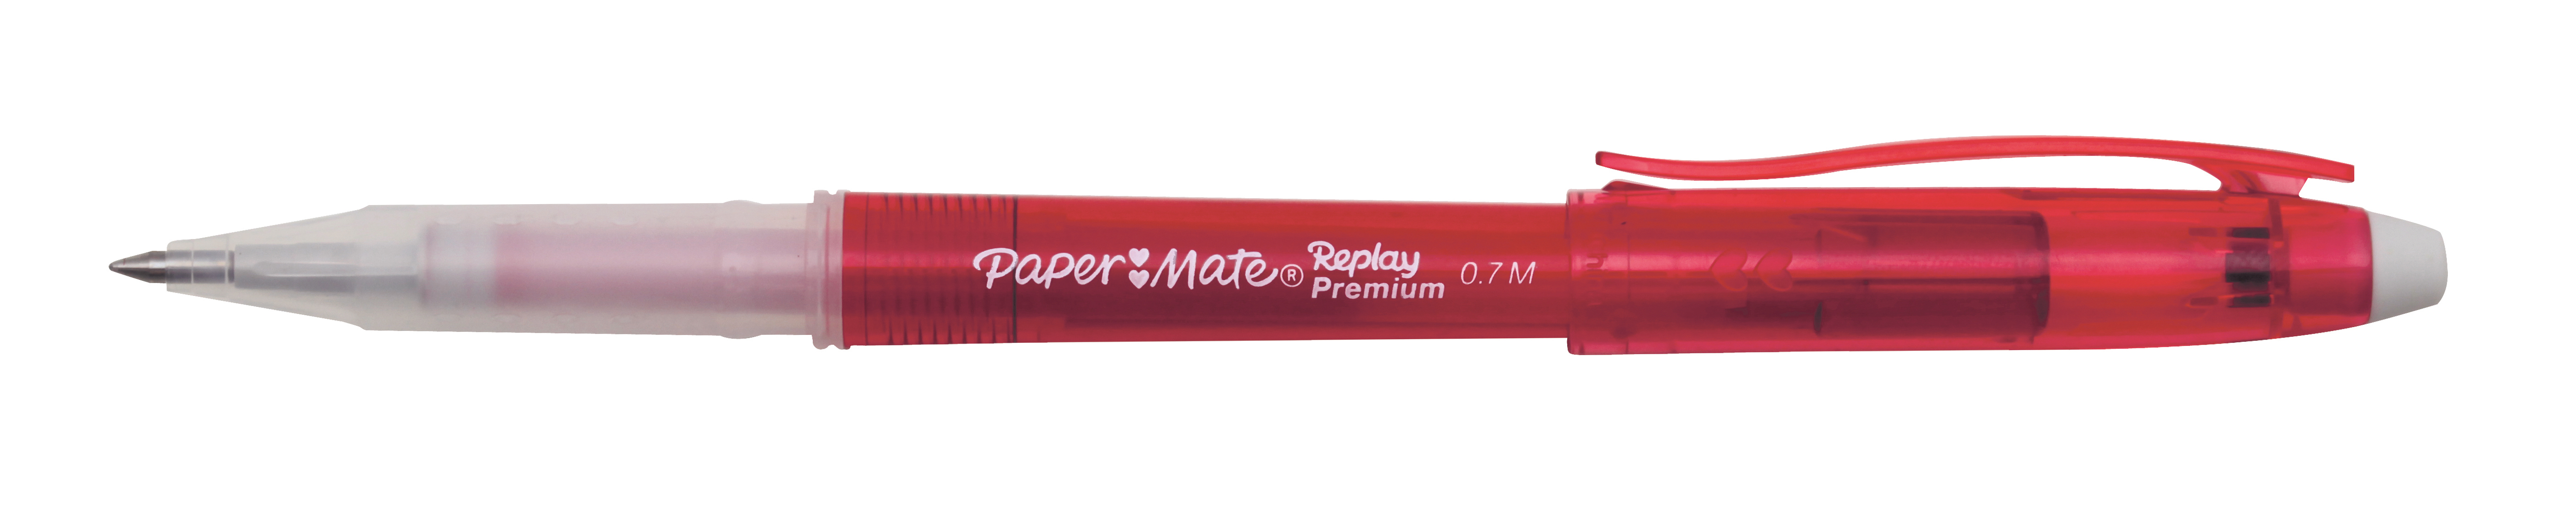 PAPERMATE Replay Premium M 1901324 rouge